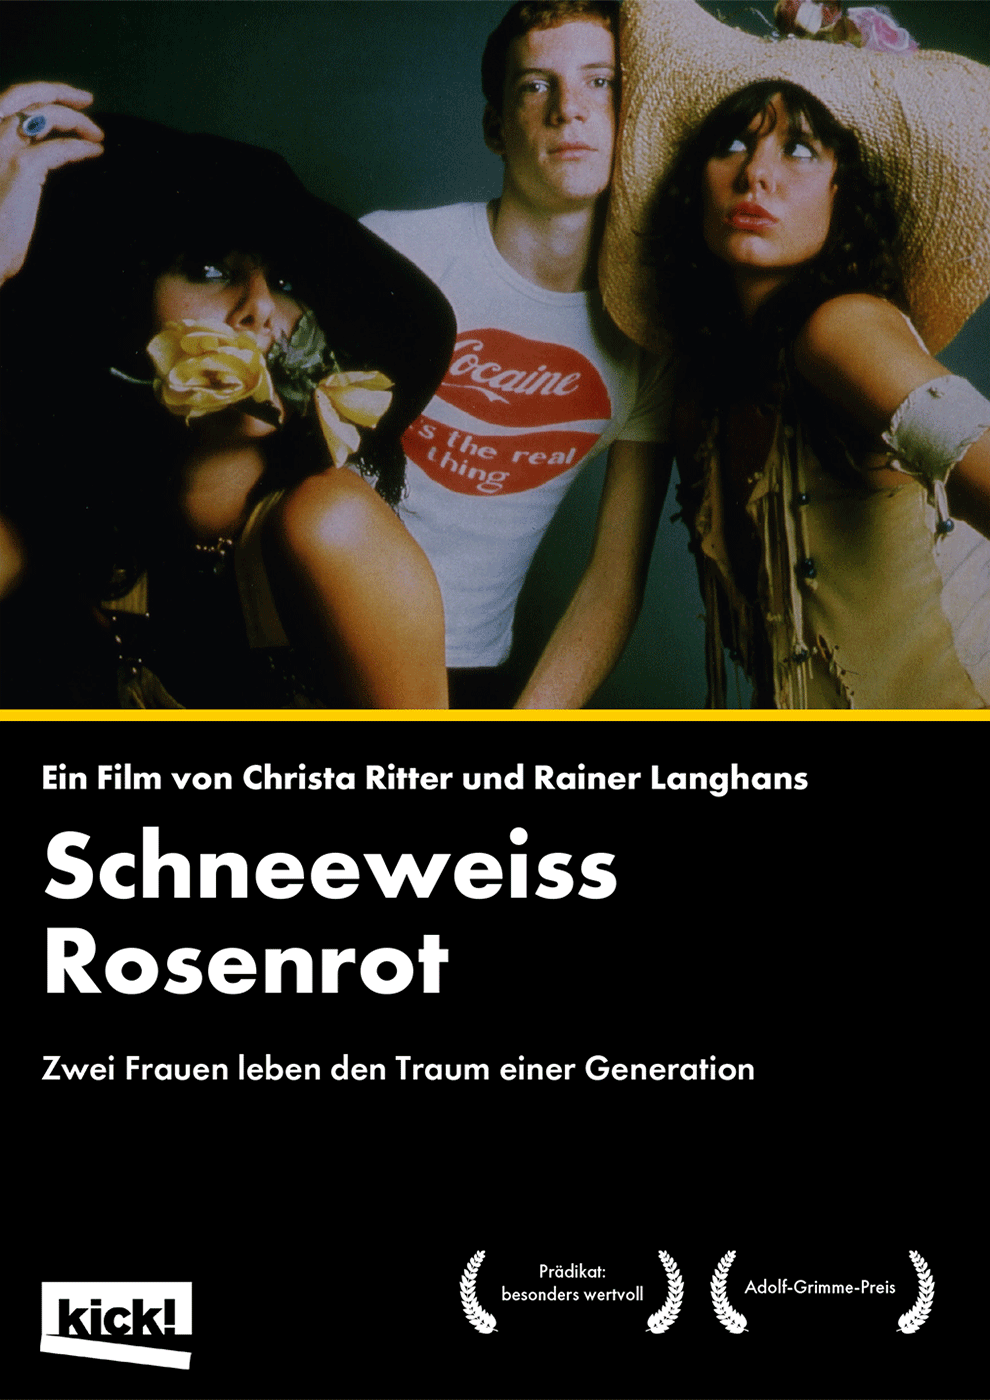 SCHNEEWEISS ROSENROT Ein Film von Christa Ritter & Rainer Langhans